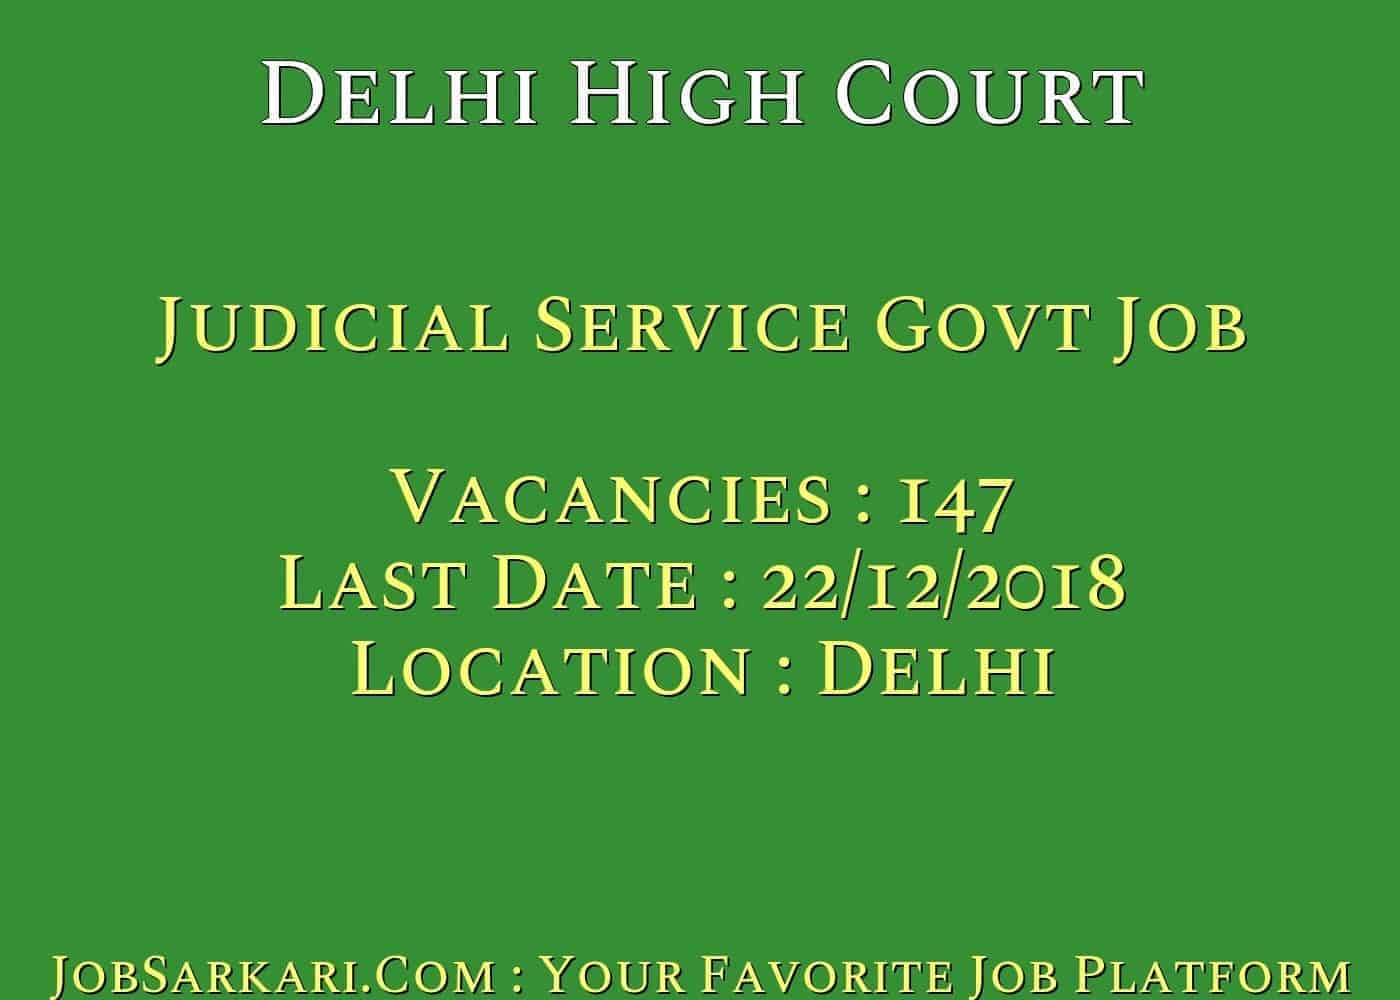 Delhi High Court Recruitment 2018 for Judicial Service Govt Job(Vacancy Increase)